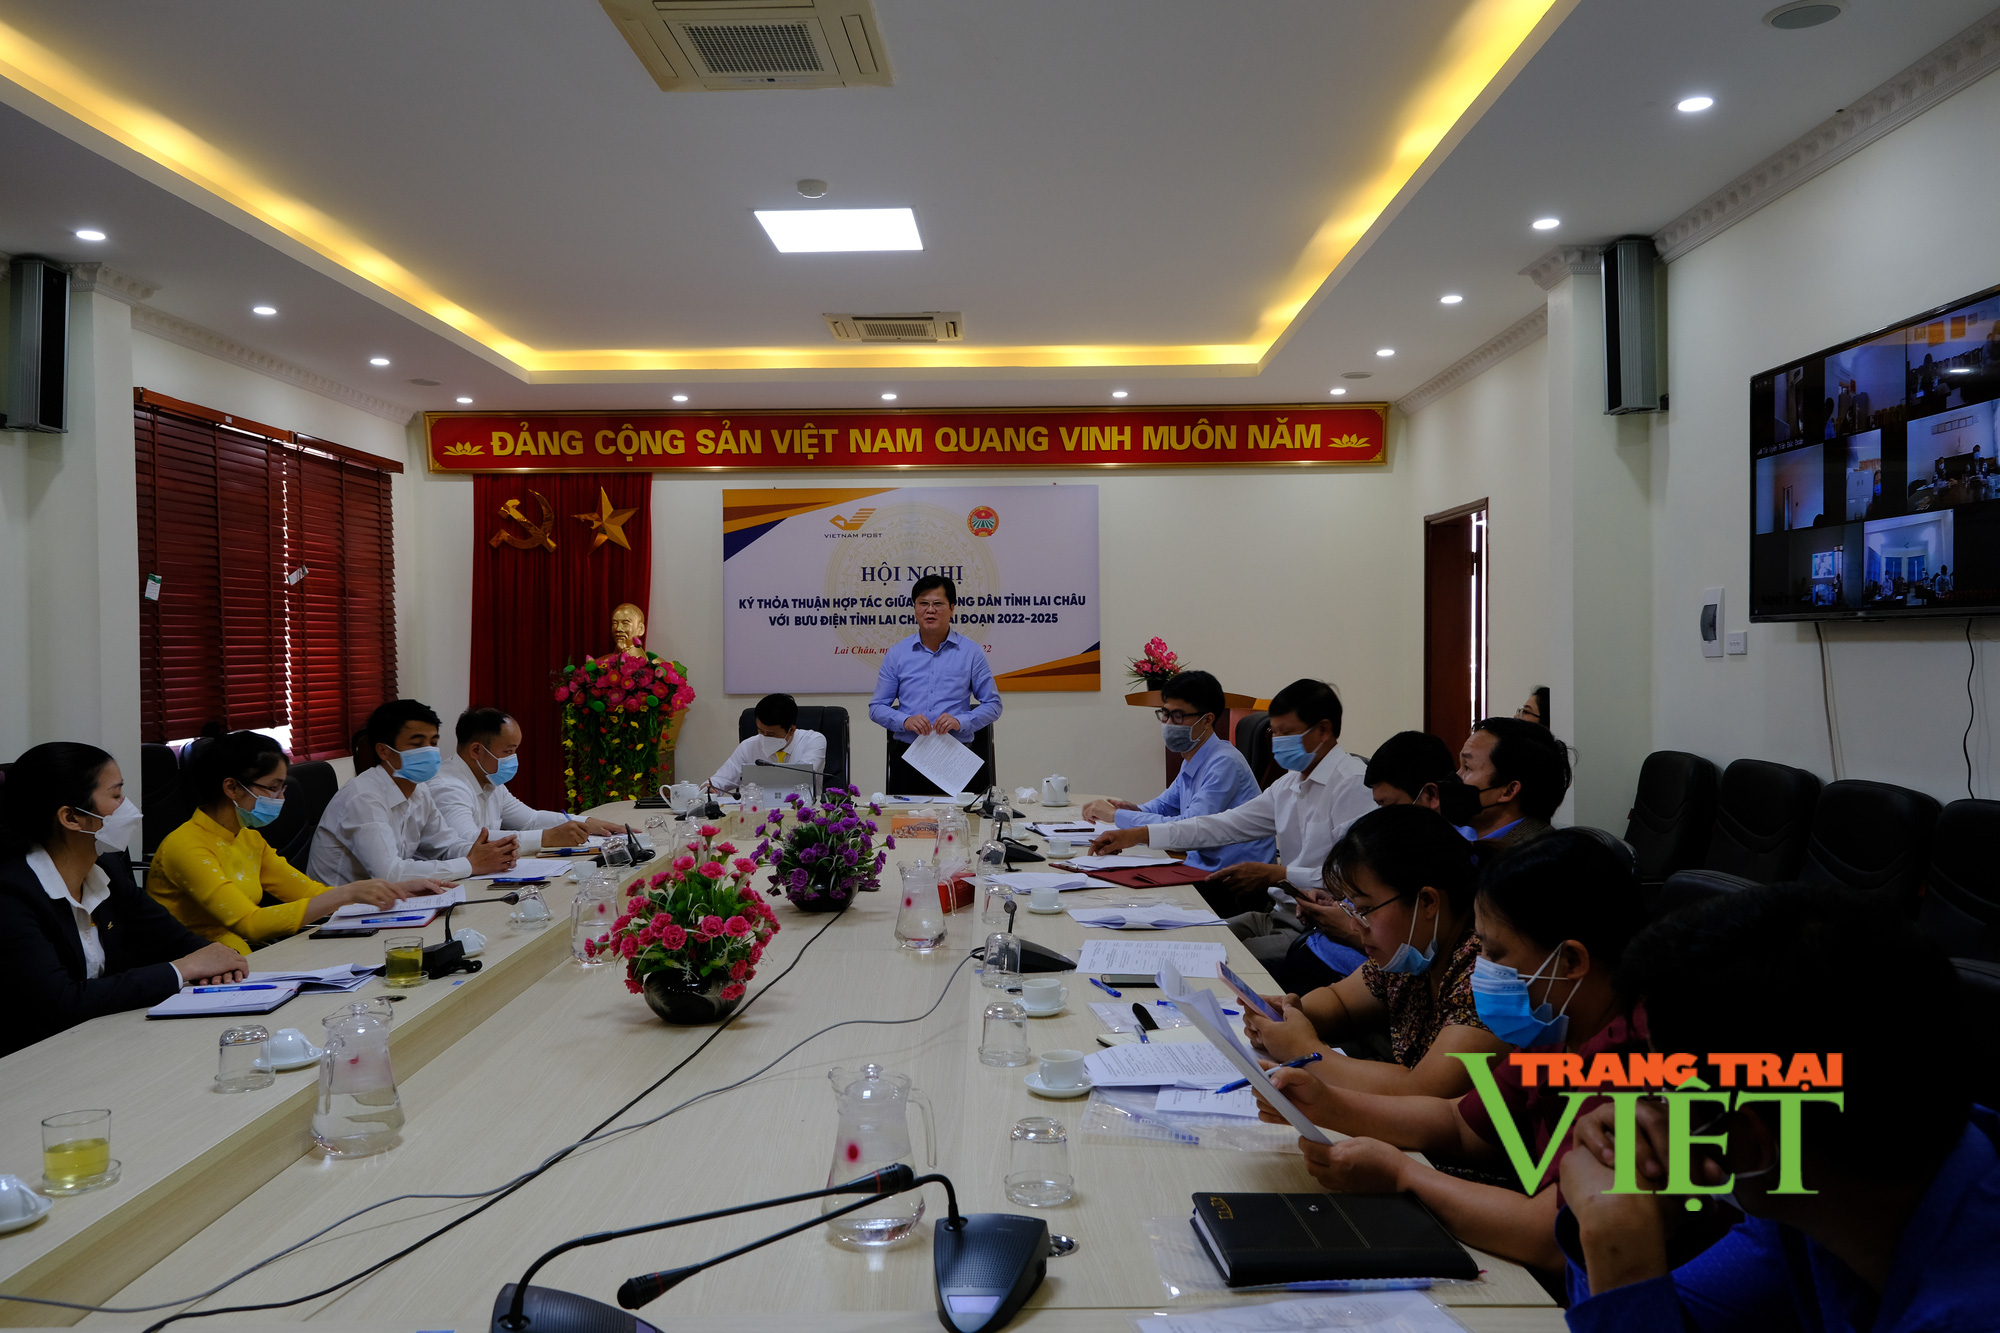 Hội Nông dân - Bưu điện Lai Châu: Hợp tác đưa nông sản lên sàn thương mại điện tử  - Ảnh 1.